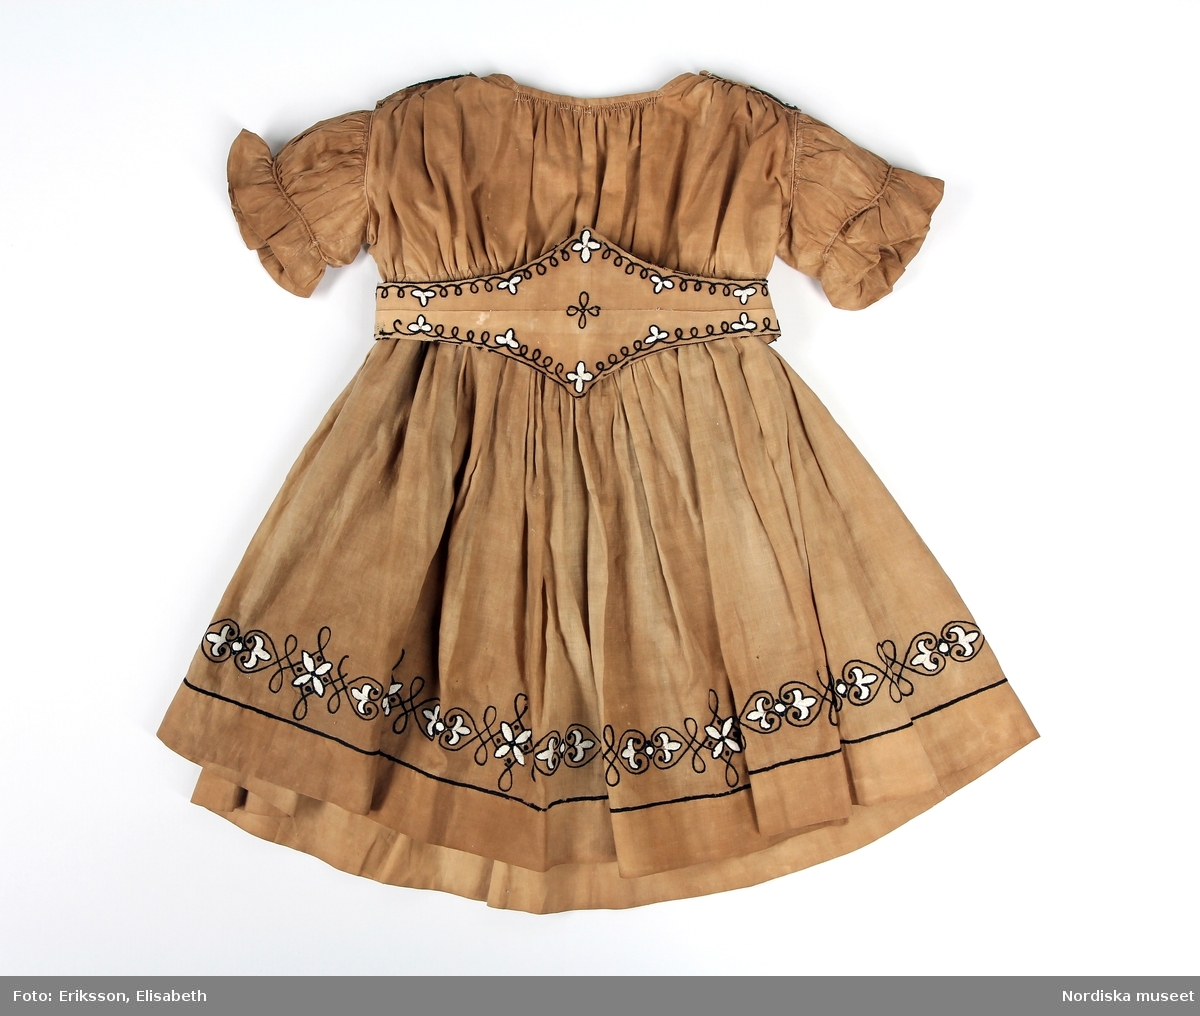 Huvudliggare:
"Barnklädning, bestående av: liv, kjol och skärp av gult bomullstyg med svarta och vita broderier. Början av 1860-talet:"